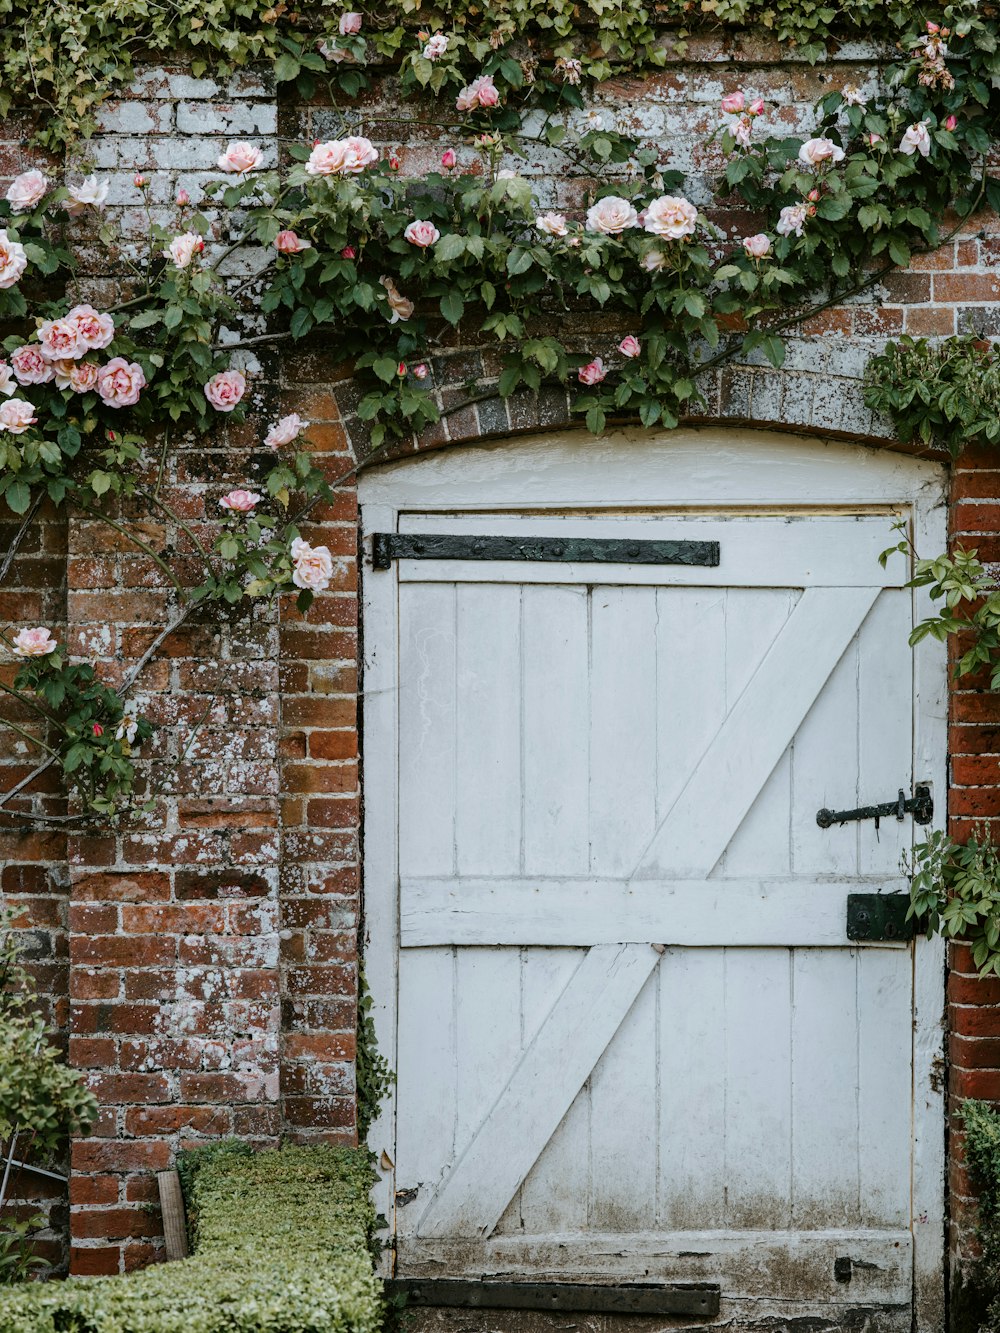 Porte en bois blanc entourée de vignes roses roses